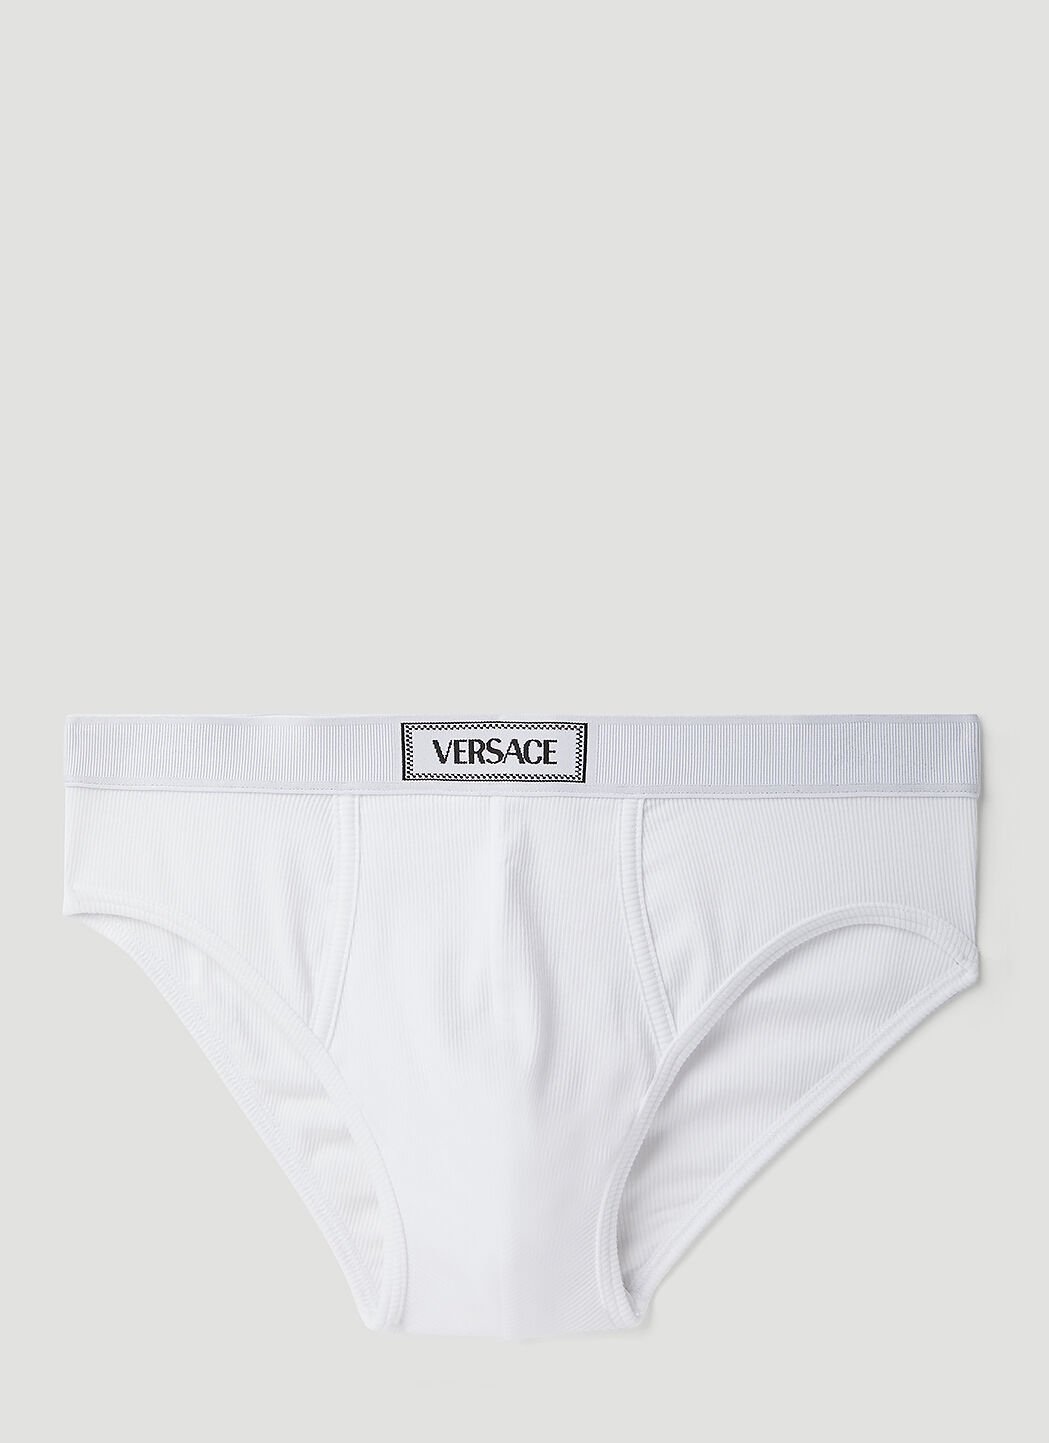 Versace 90S Logo Briefs White ver0154004